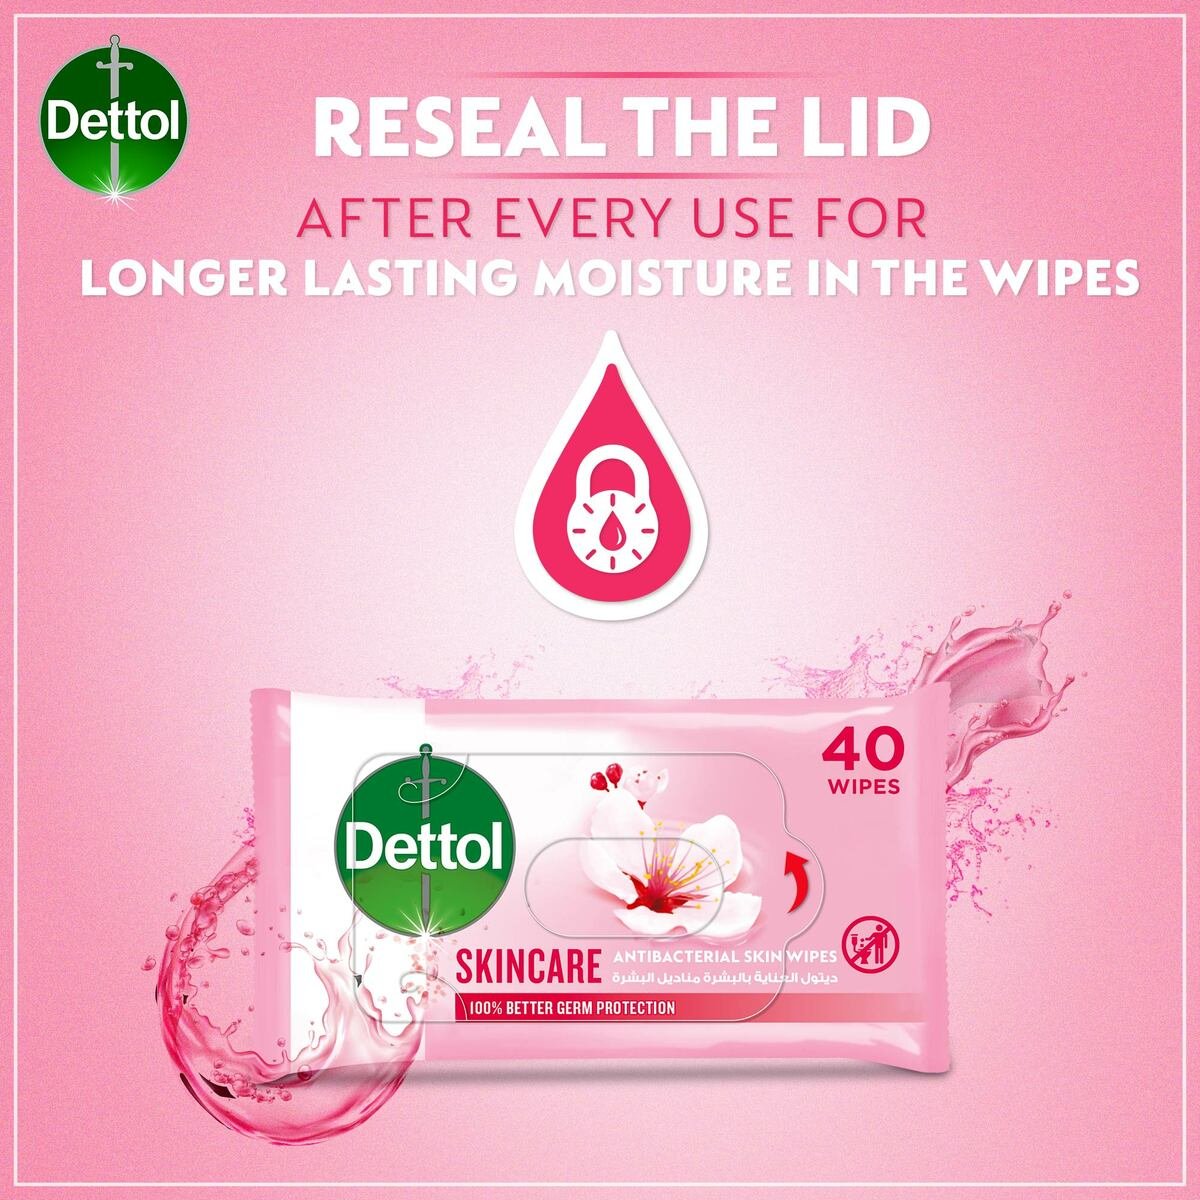 Dettol Skincare Antibacterial Skin Wipes 40pcs